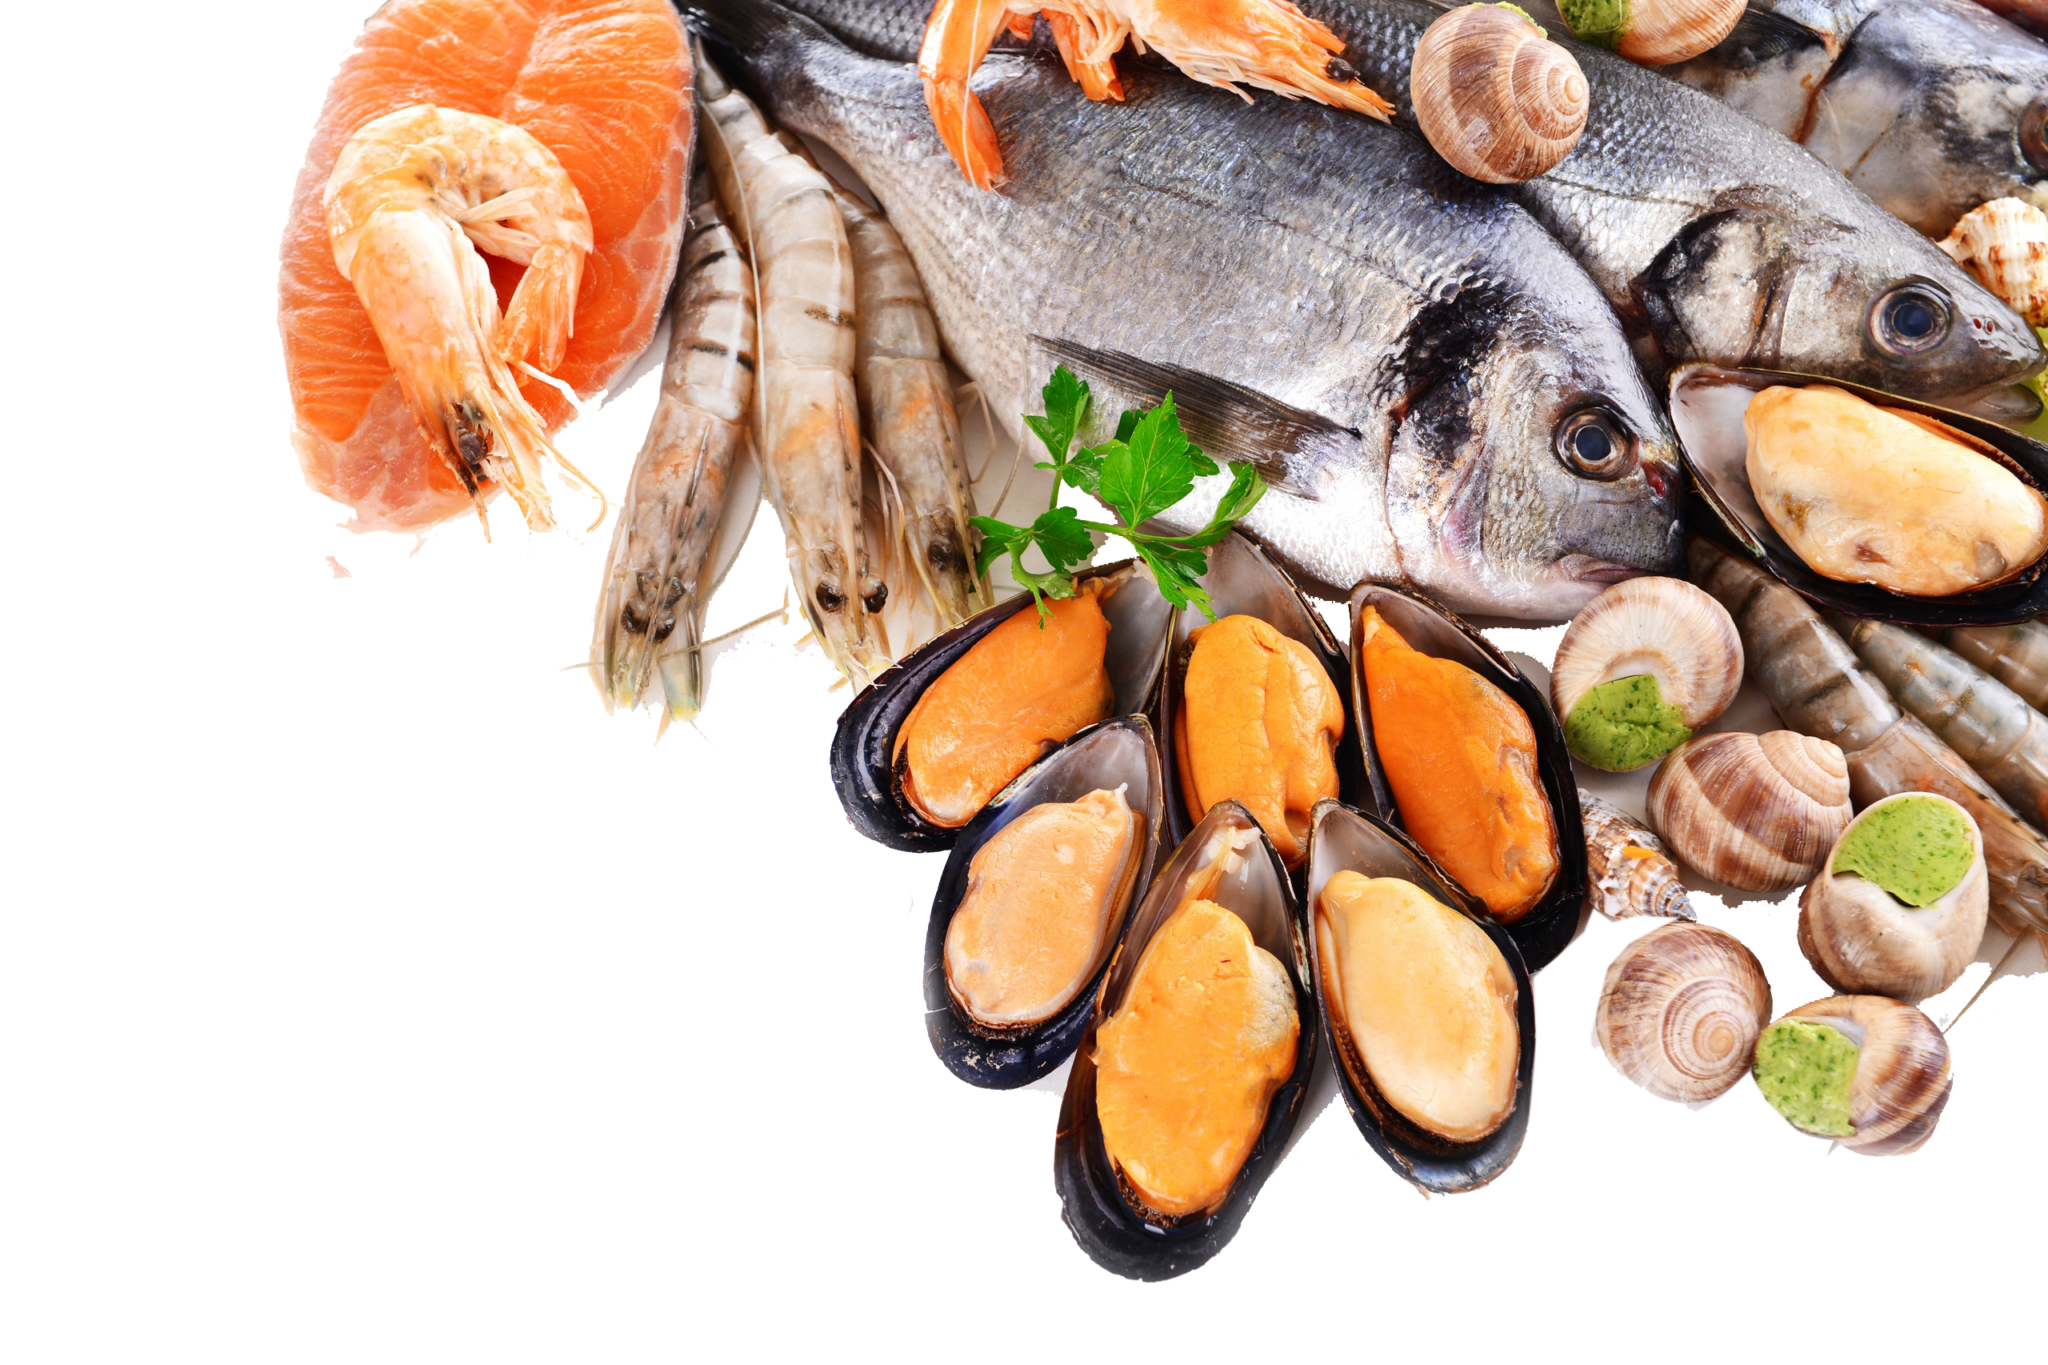 Fish product. Морепродукты. Рыбные продукты. Мор рыбы. Красивые морепродукты.